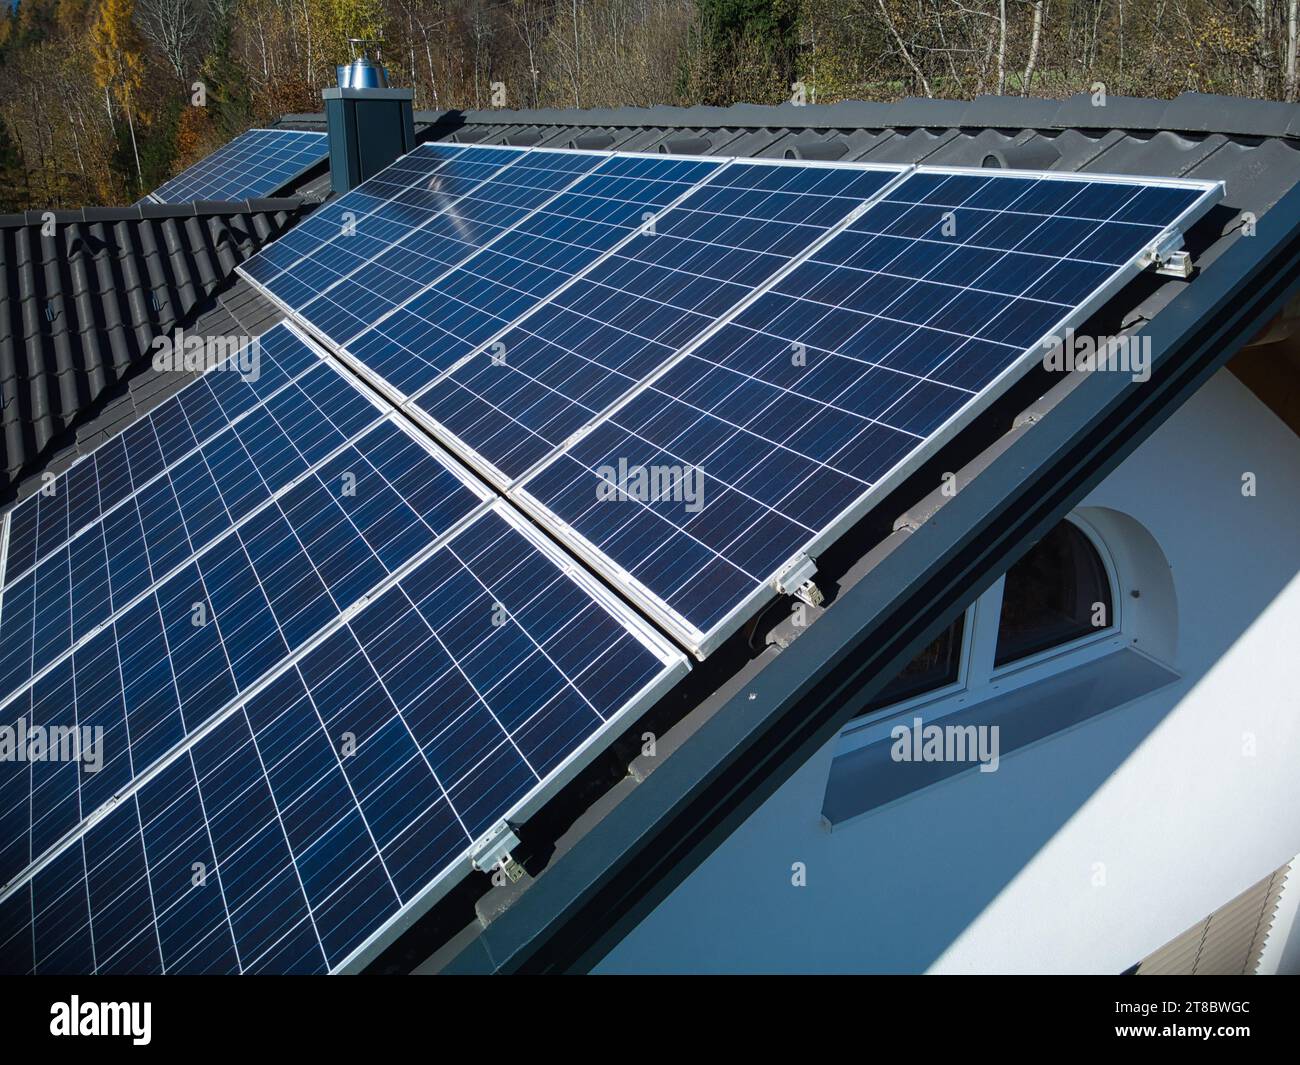 Erkunden Sie die komplexen Details erneuerbarer Energien mit dieser Nahaufnahme der Drohne, die PV-Panels auf einem dunklen Dach vor dem Hintergrund des lebendigen Au erfasst Stockfoto